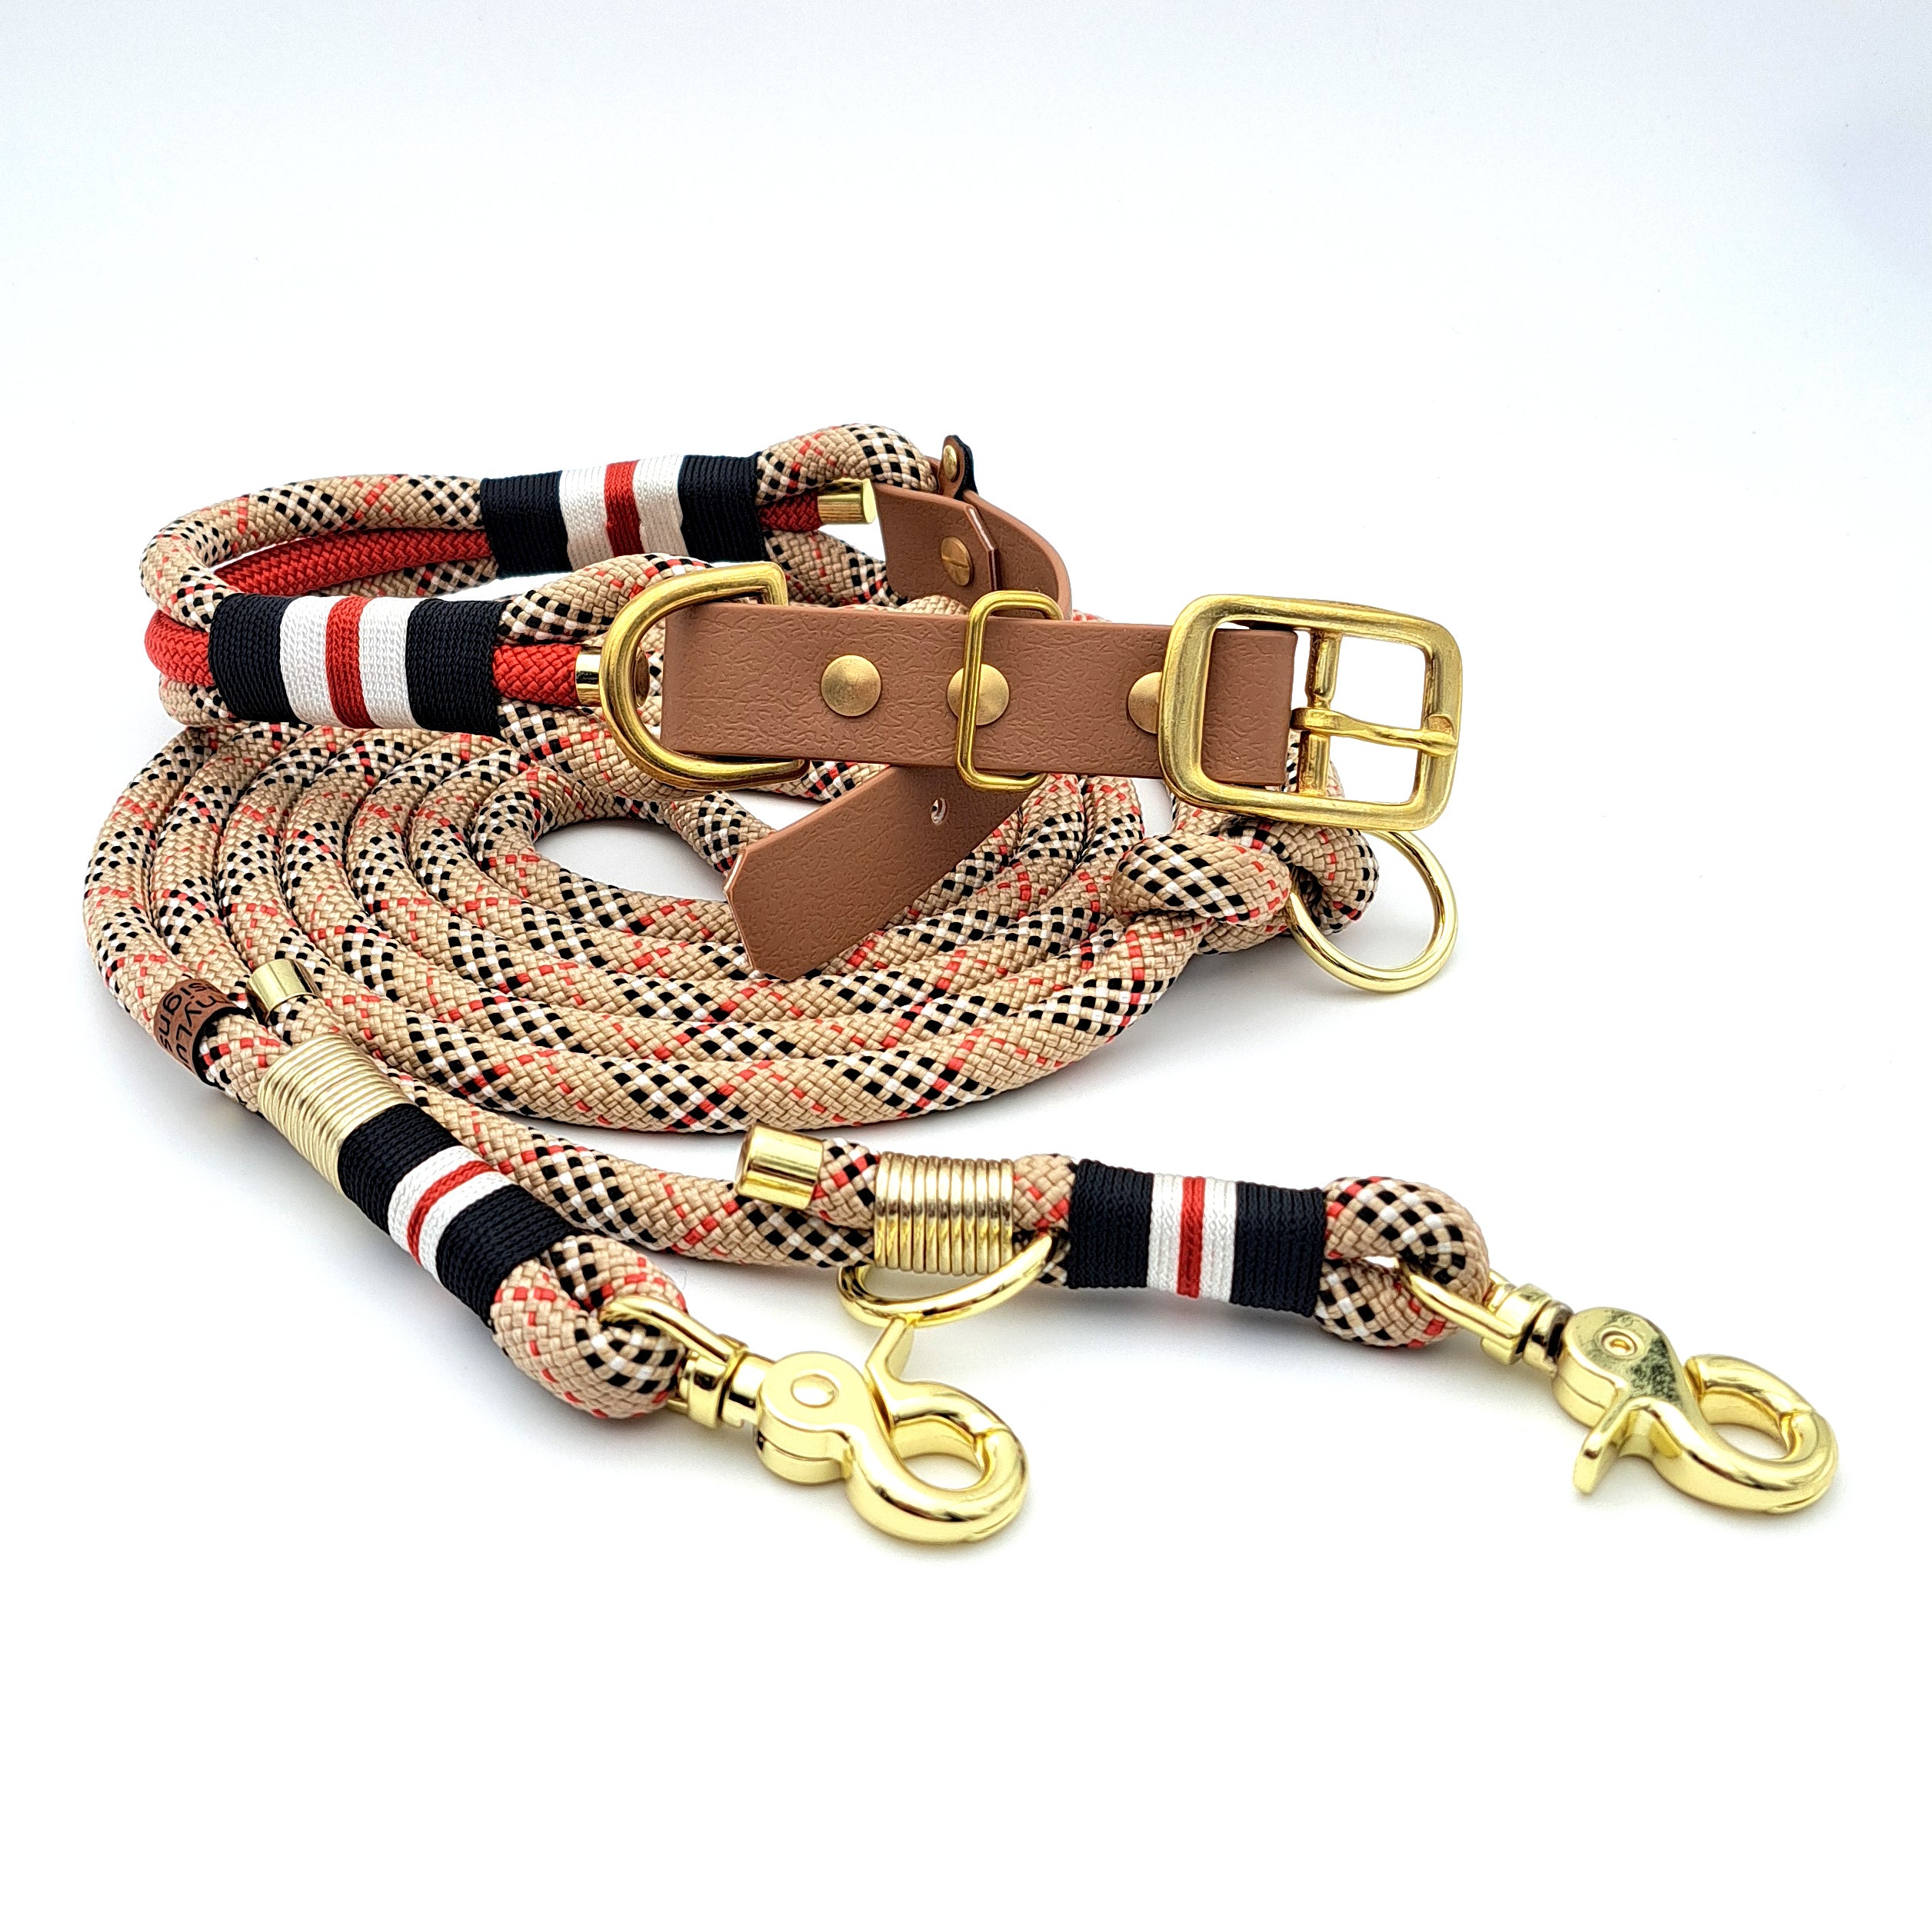 Hundeleine Halsband Set Tartan-Beige Tauseil mit goldener Hardware